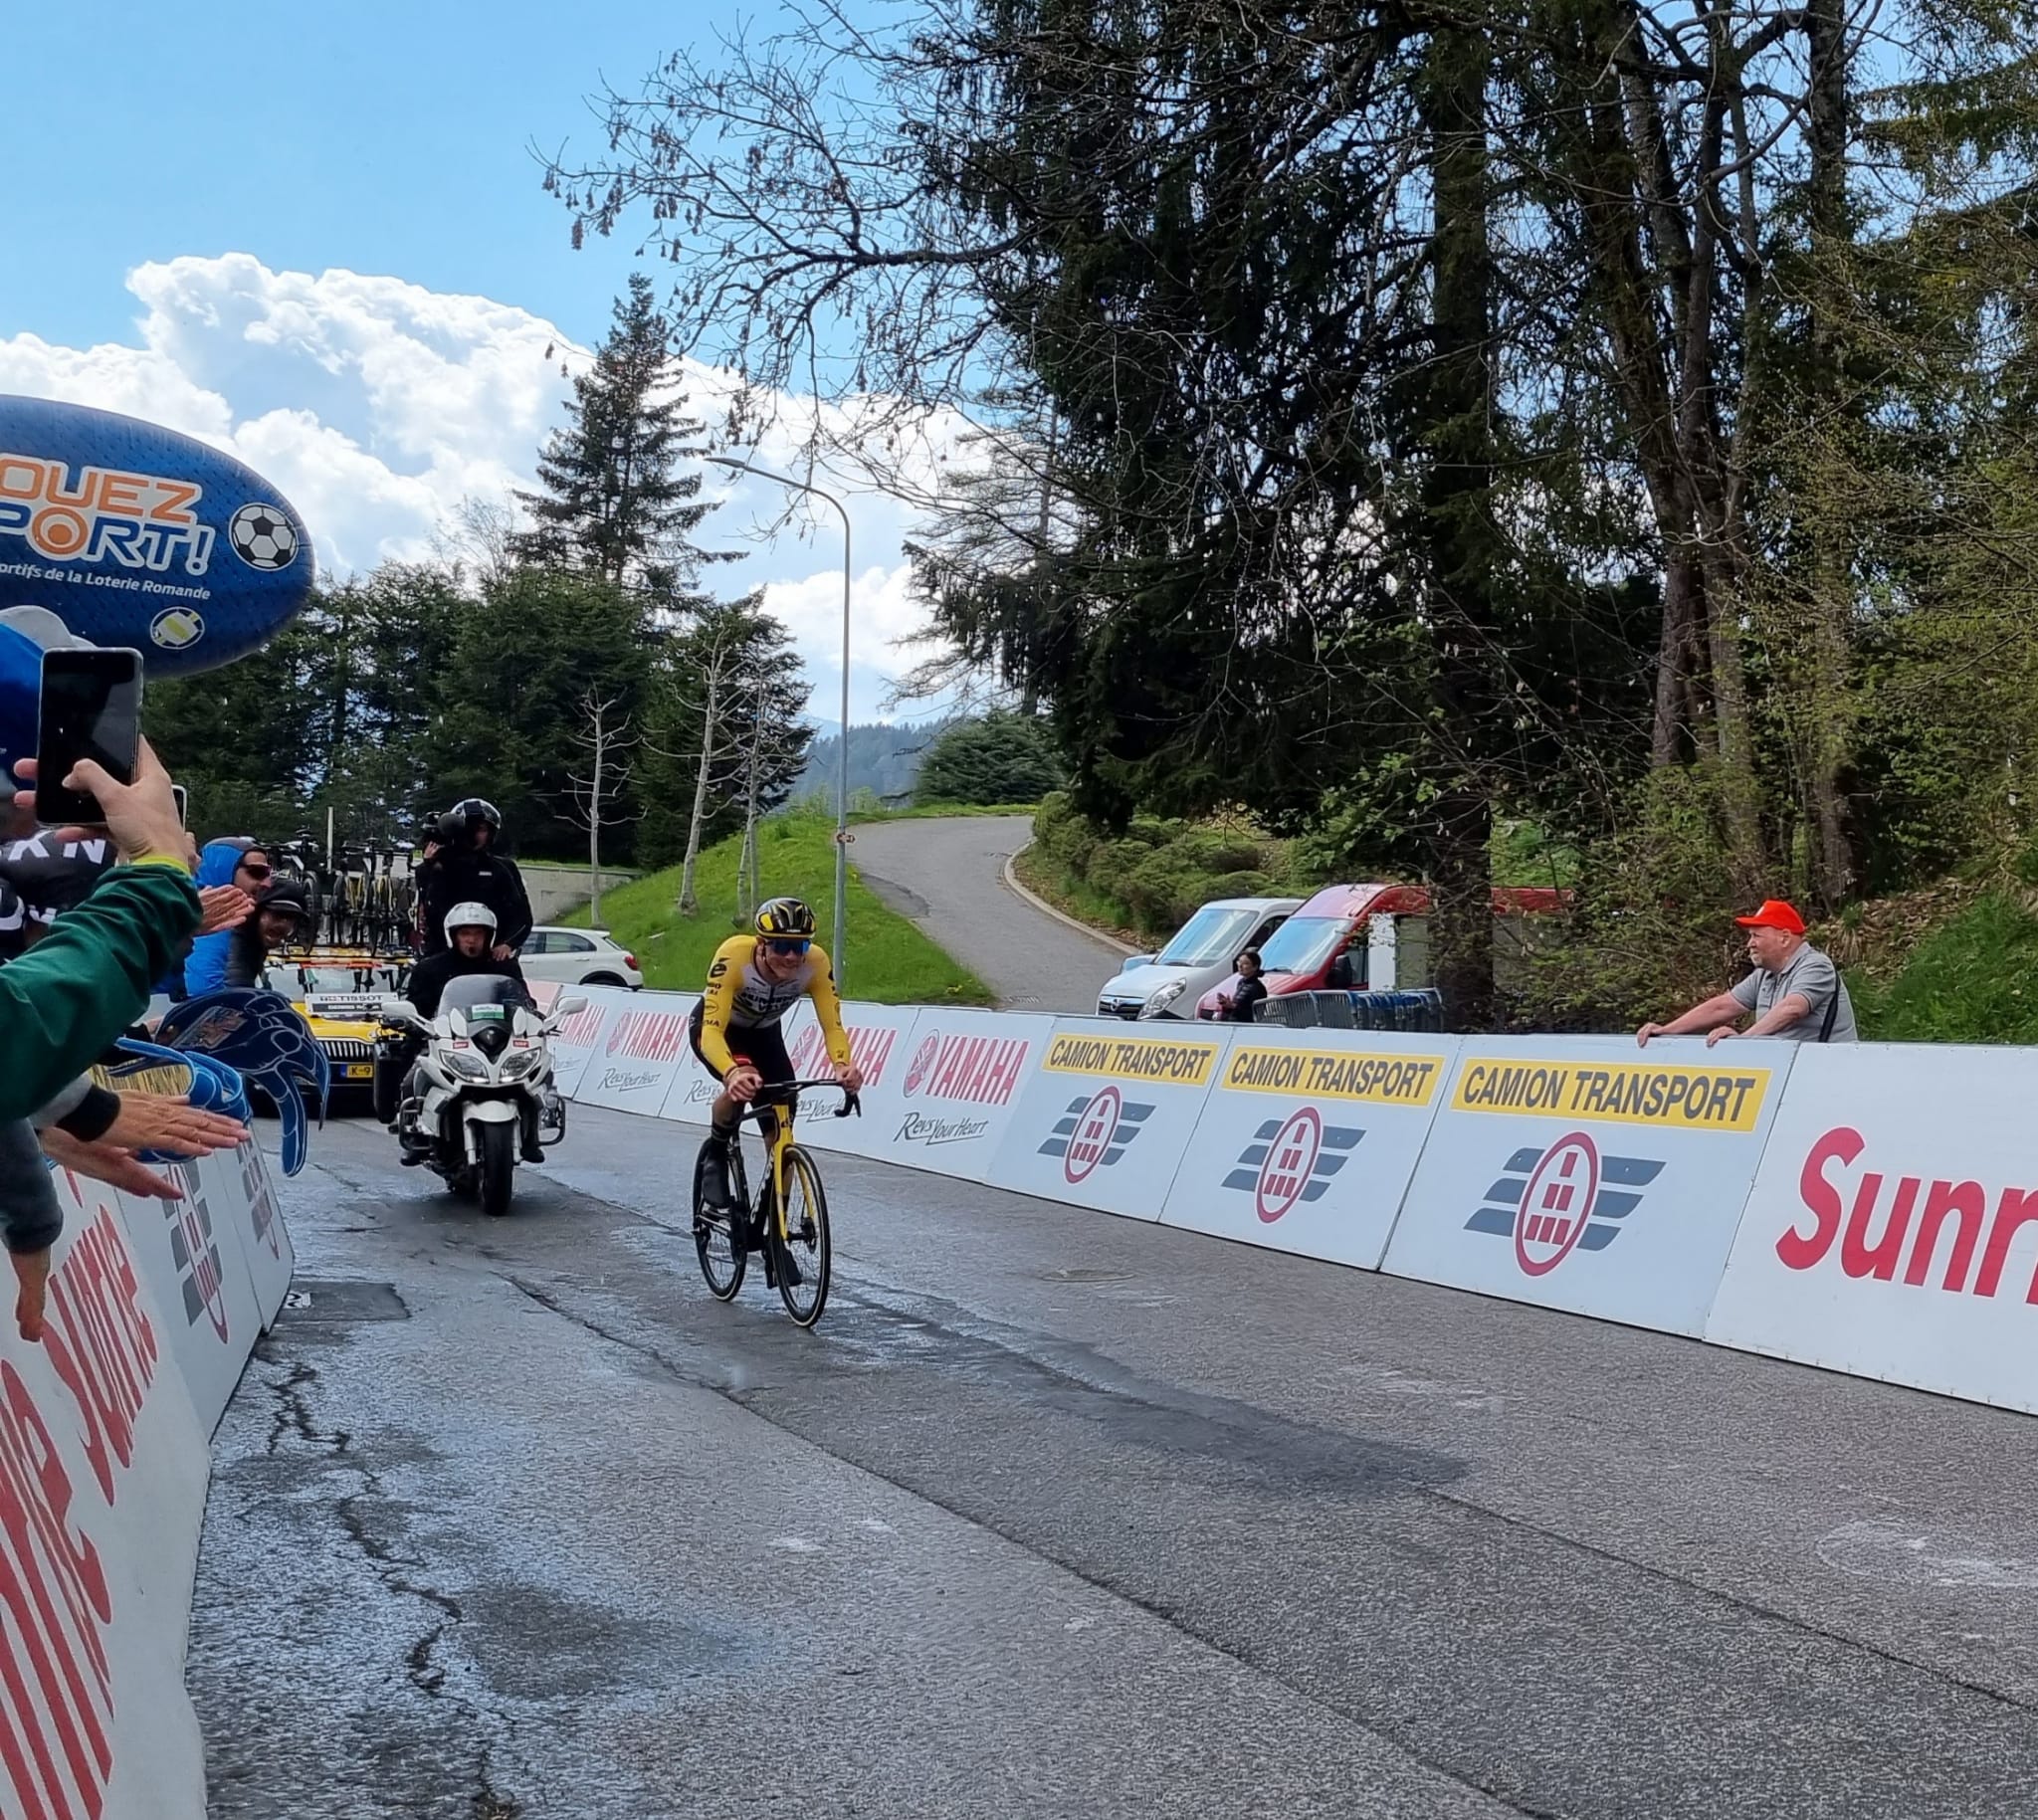 Cyclisme: Un Suisse monte sur le podium final du Tour de Romandie à Villars